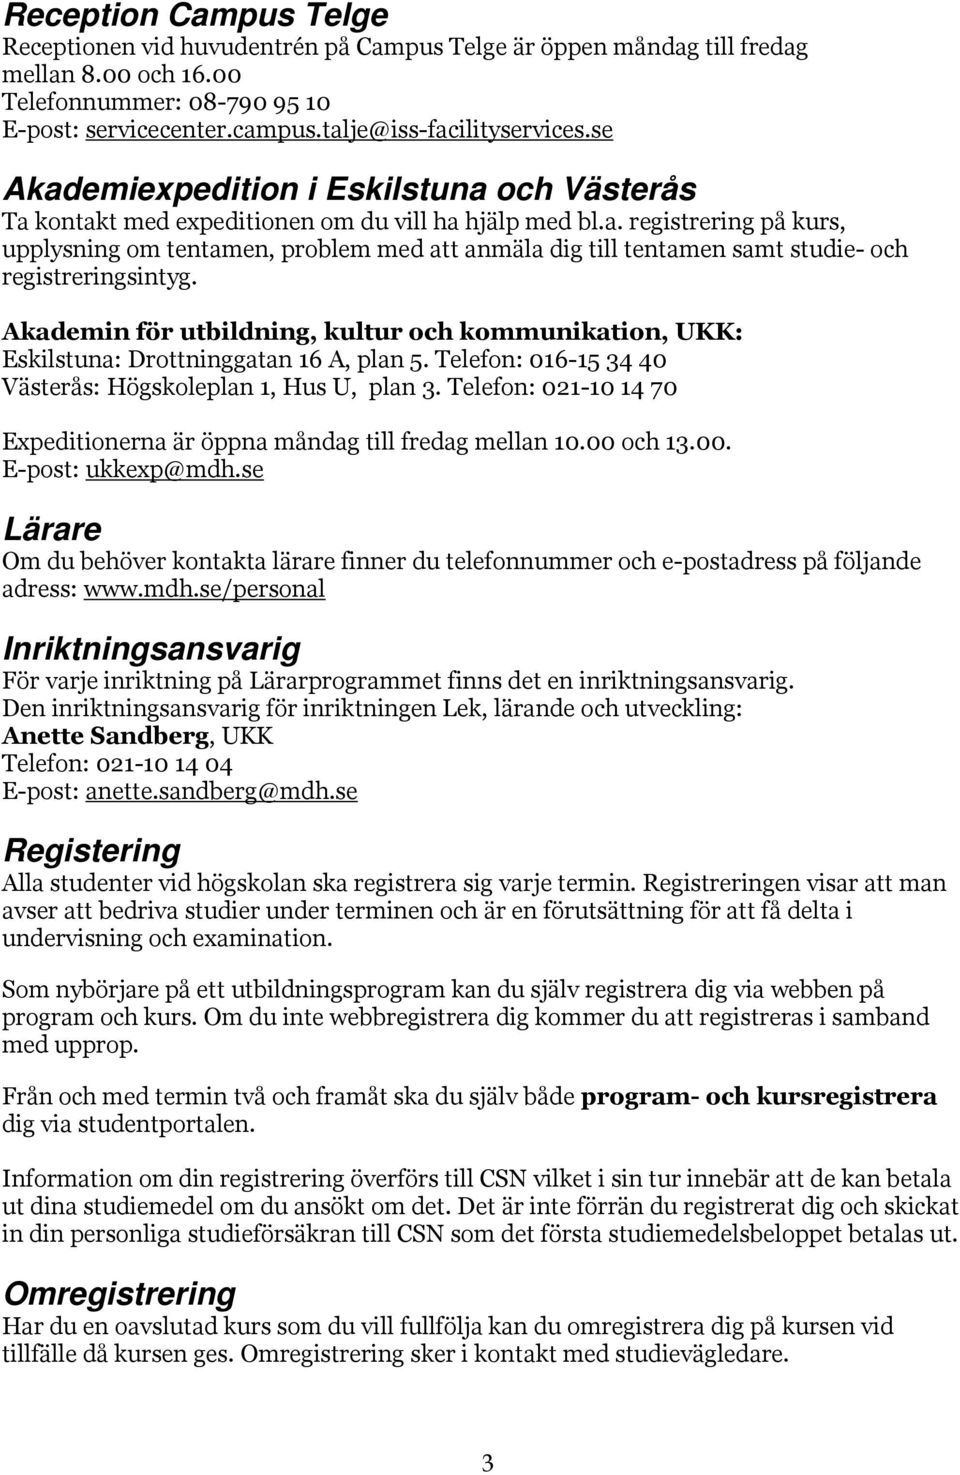 Akademin för utbildning, kultur och kommunikation, UKK: Eskilstuna: Drottninggatan 16 A, plan 5. Telefon: 016-15 34 40 Västerås: Högskoleplan 1, Hus U, plan 3.